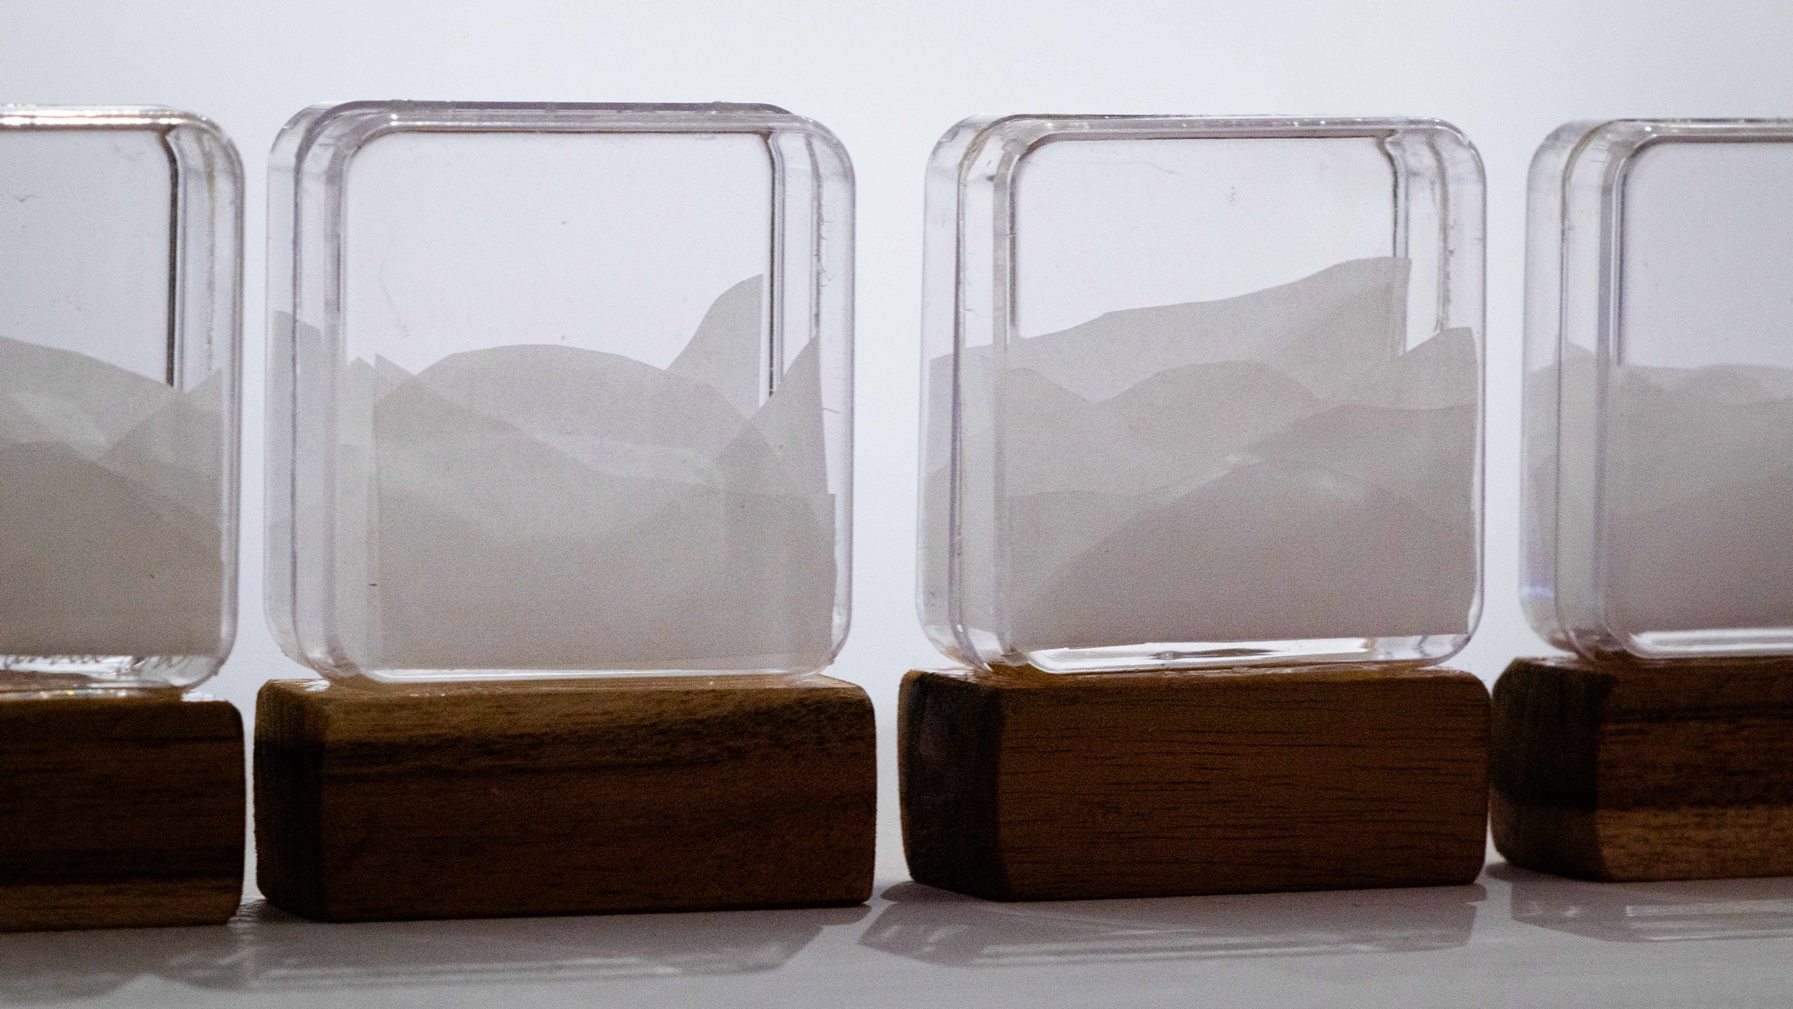 Série Micropaisagens, Micropaisagem Neblina (detalhes), Anna Moraes, 2020. Madeira, papel vegetal e acrílico, 7x5,5x2cm cada.